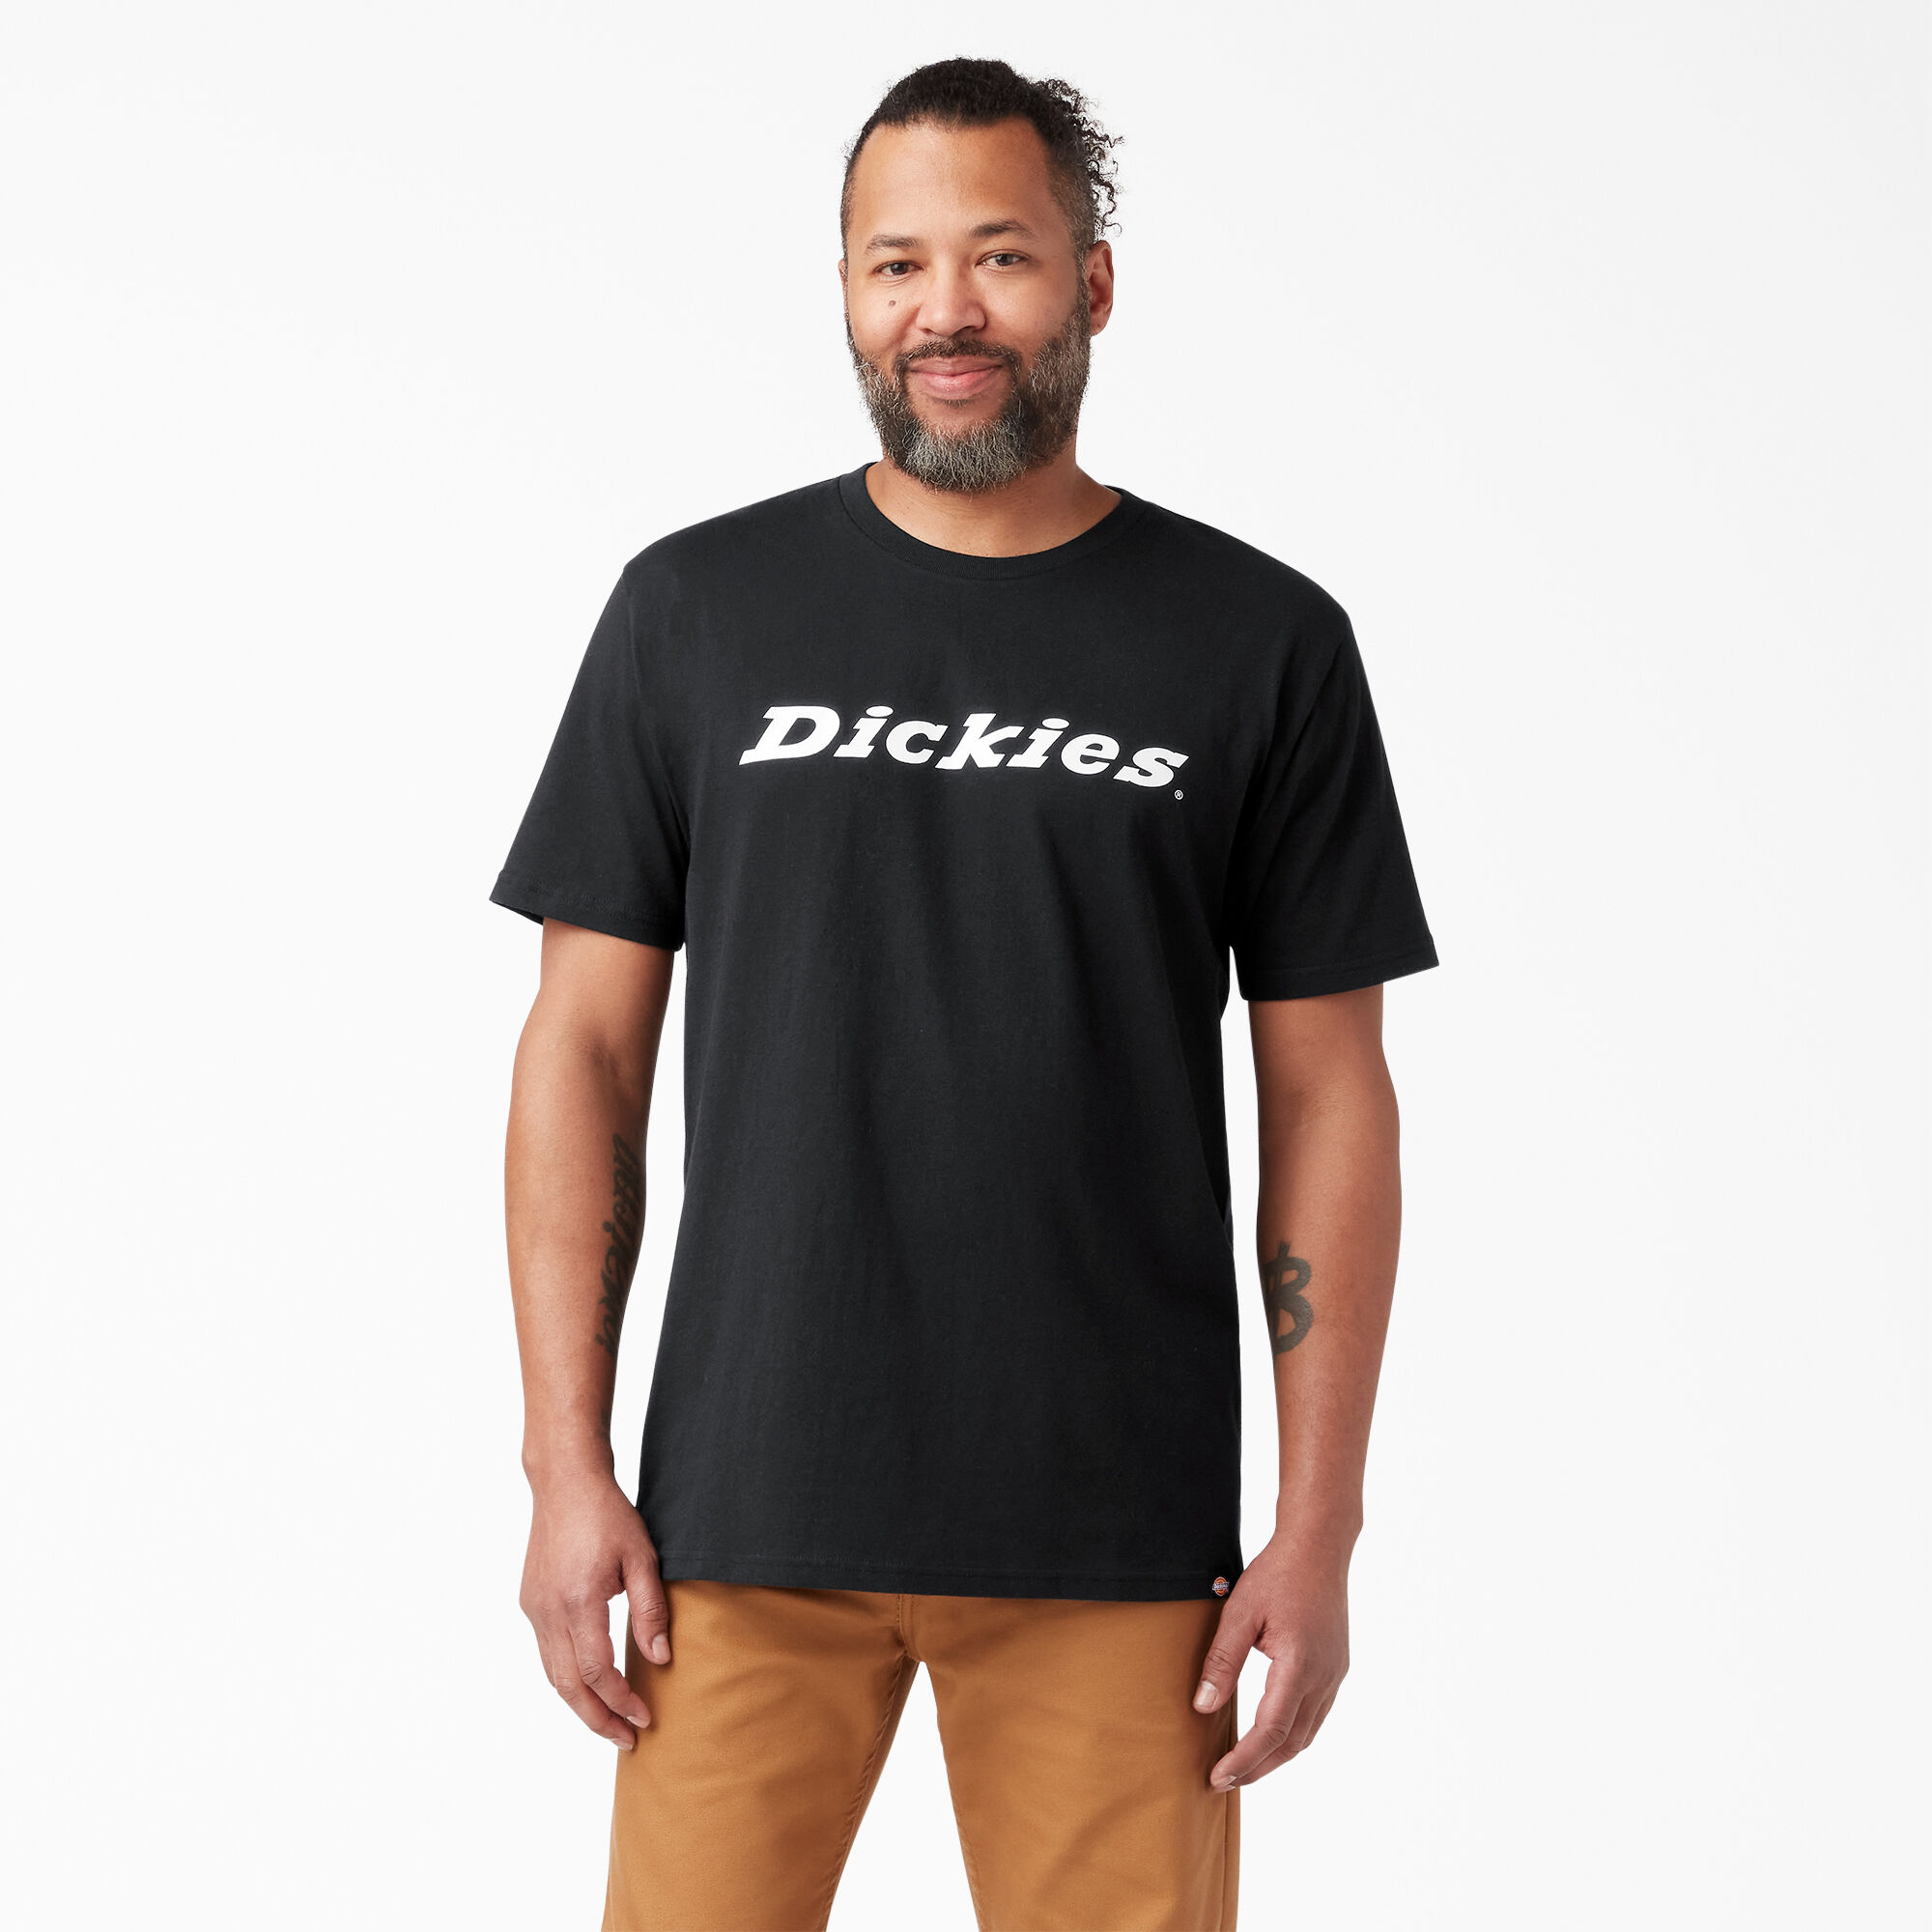 dickies baseball shirt